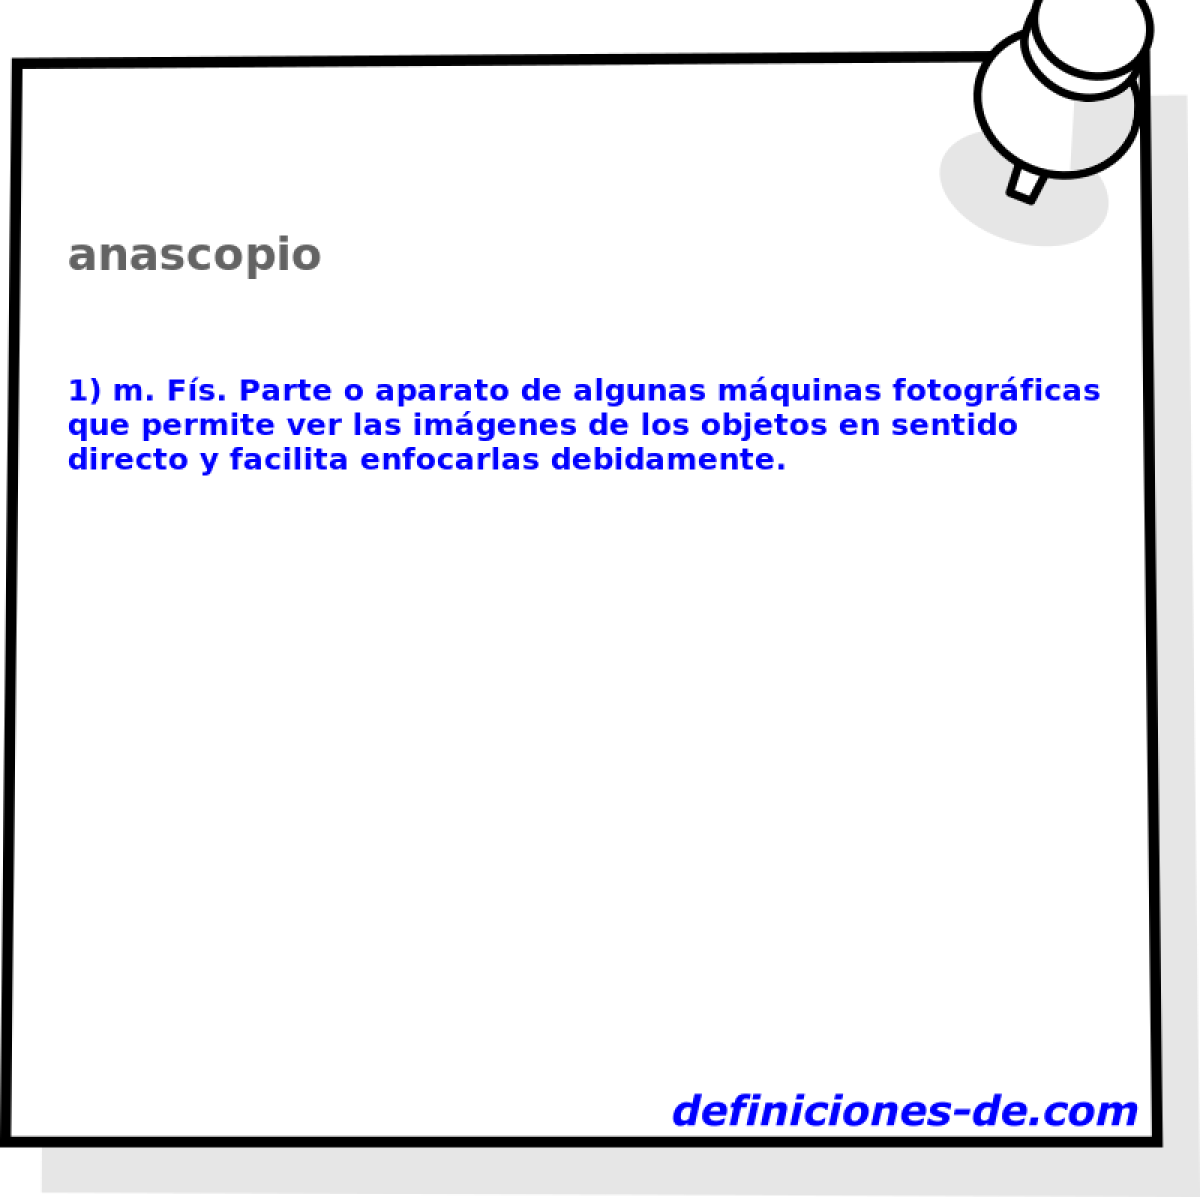 anascopio 